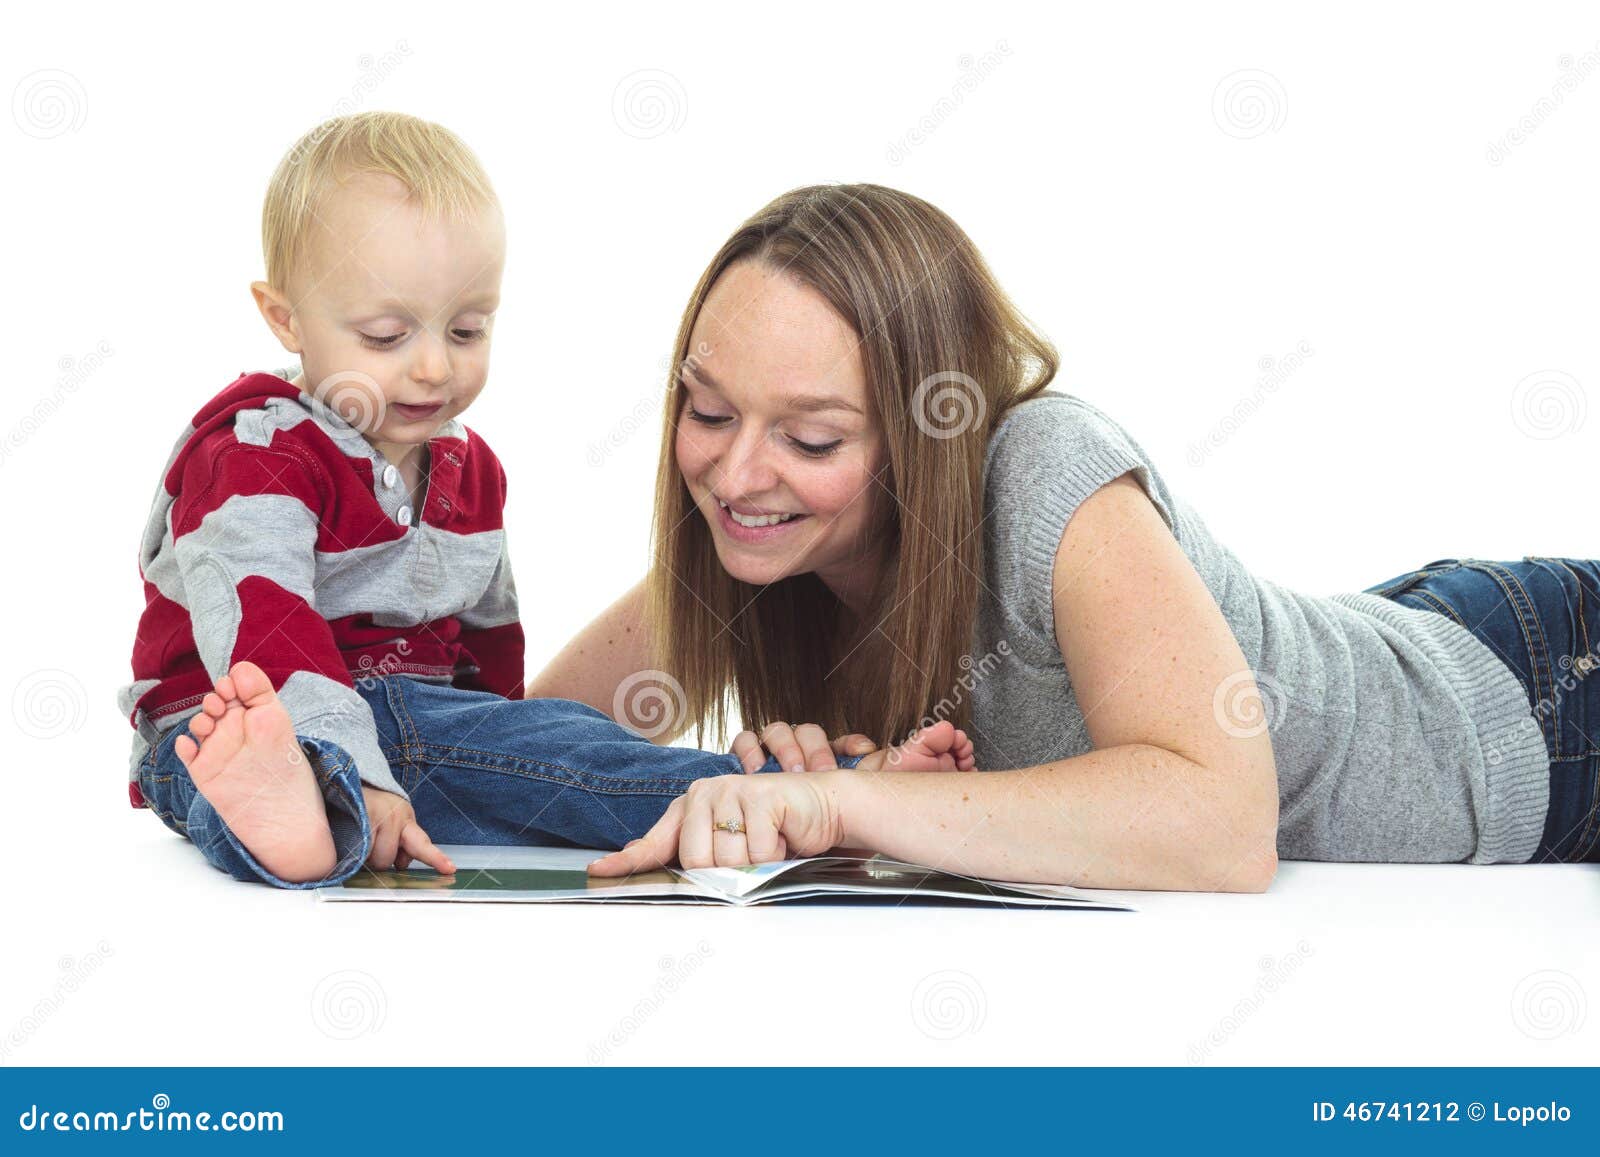 Читать мама лизала. Прочтение у матери. Фото мамы, читающей трехлетнему ребенку.